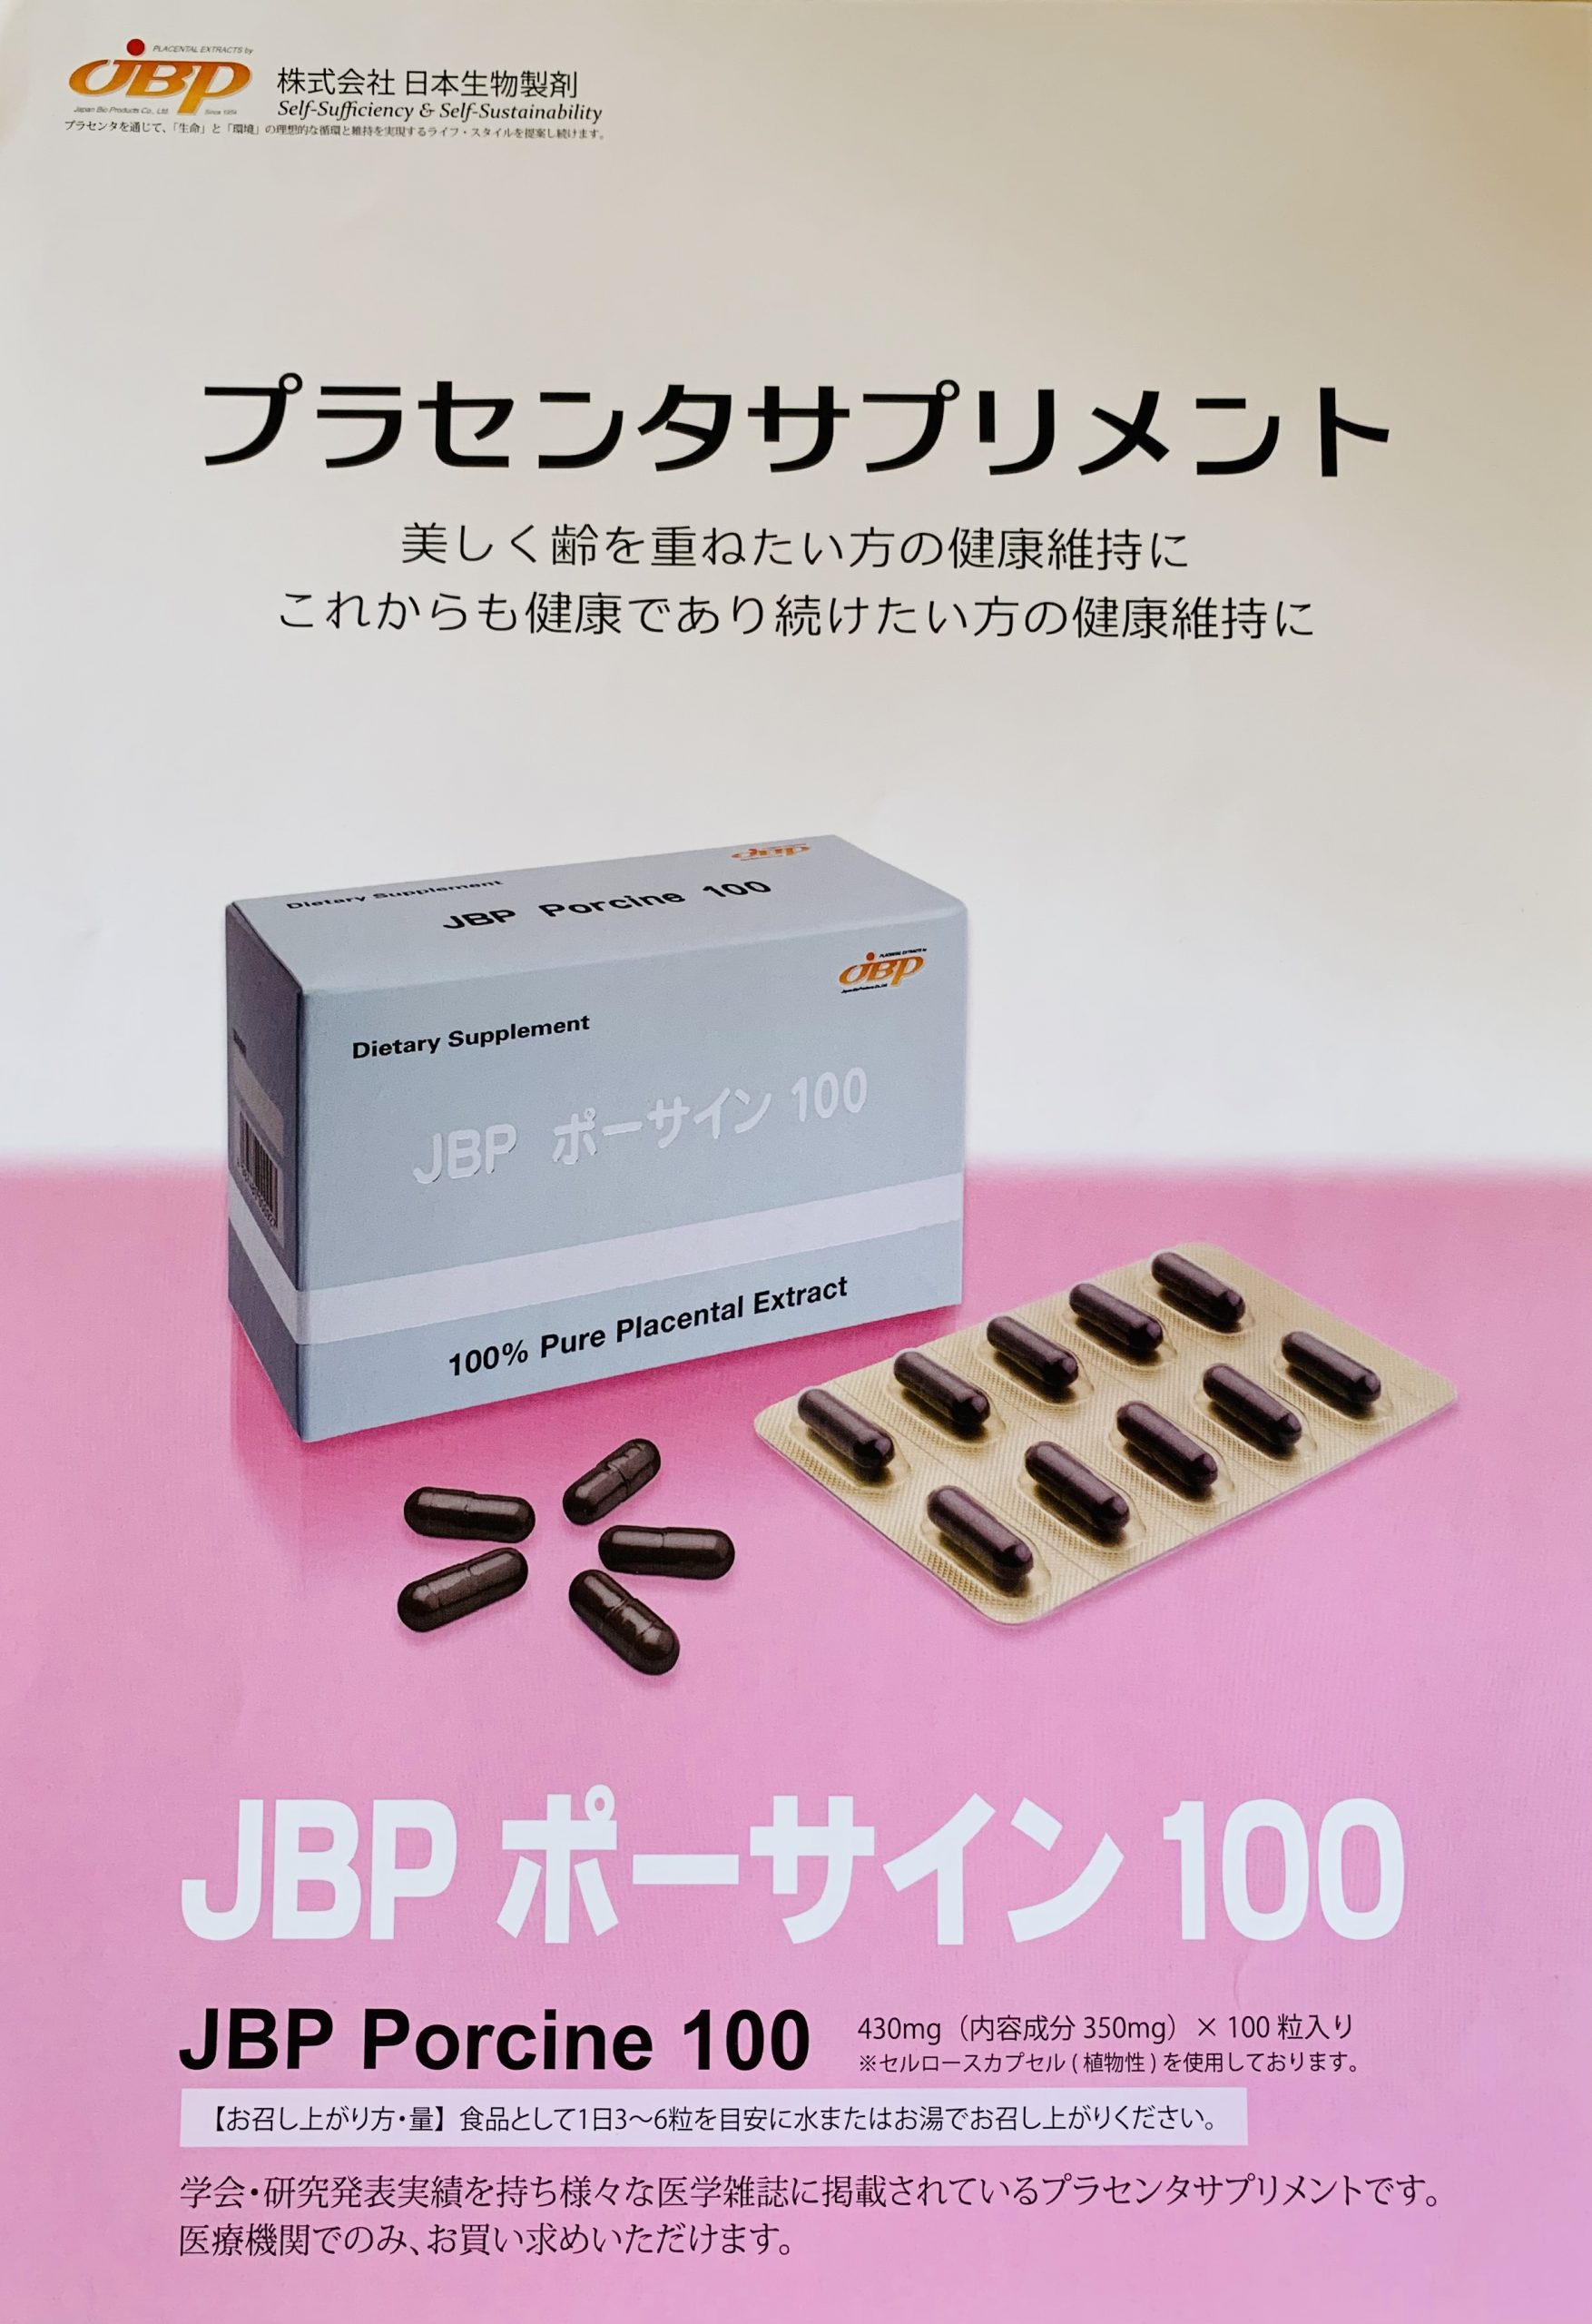 新商品 JBPポーサインプロ(ポーサイン100よりカプセル小さめ